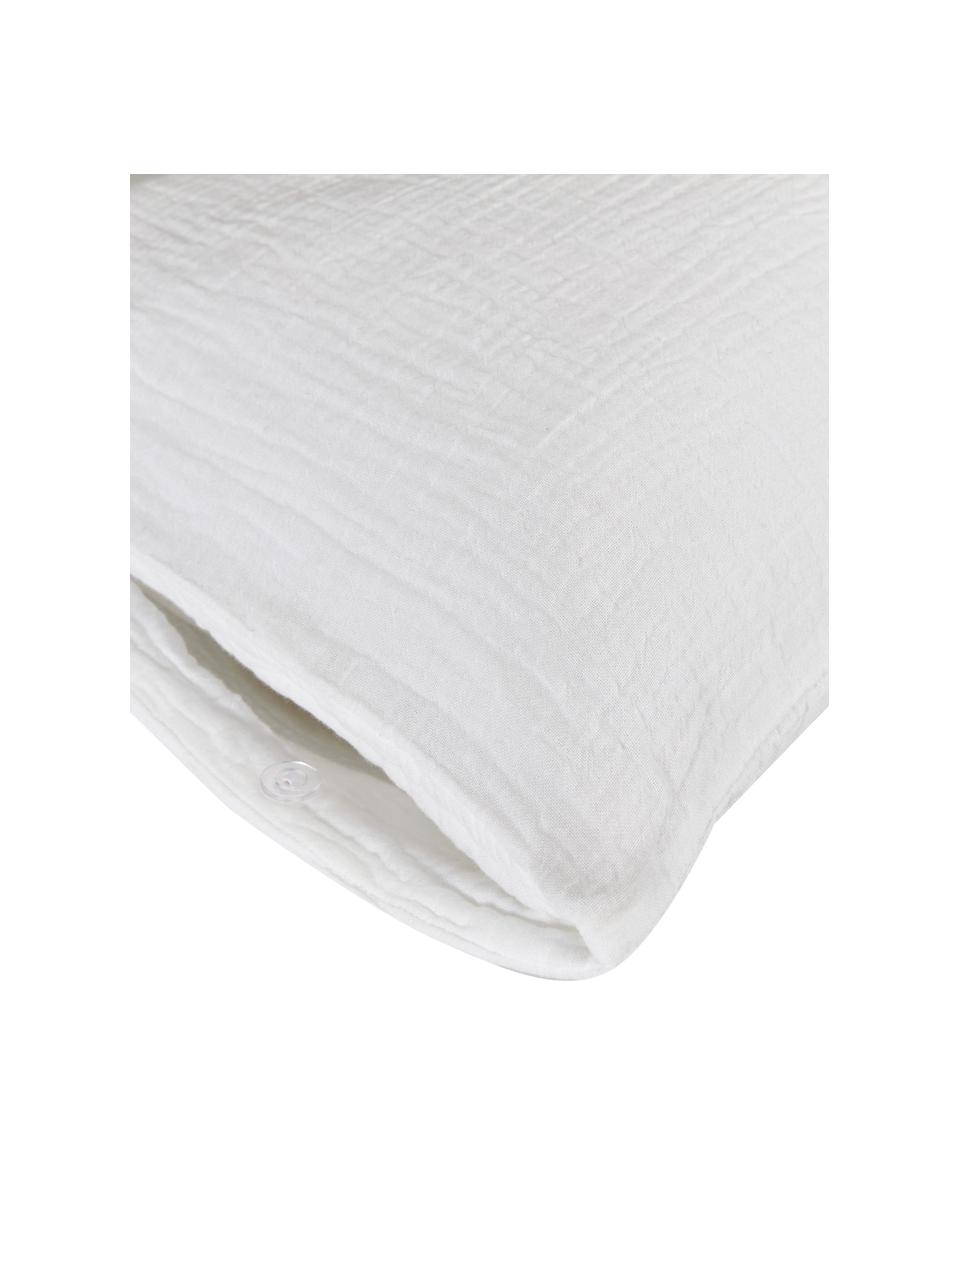 Set van 2 mousseline kussenhoezen Odile van katoen in wit, Wit, 60 cm x 70 cm